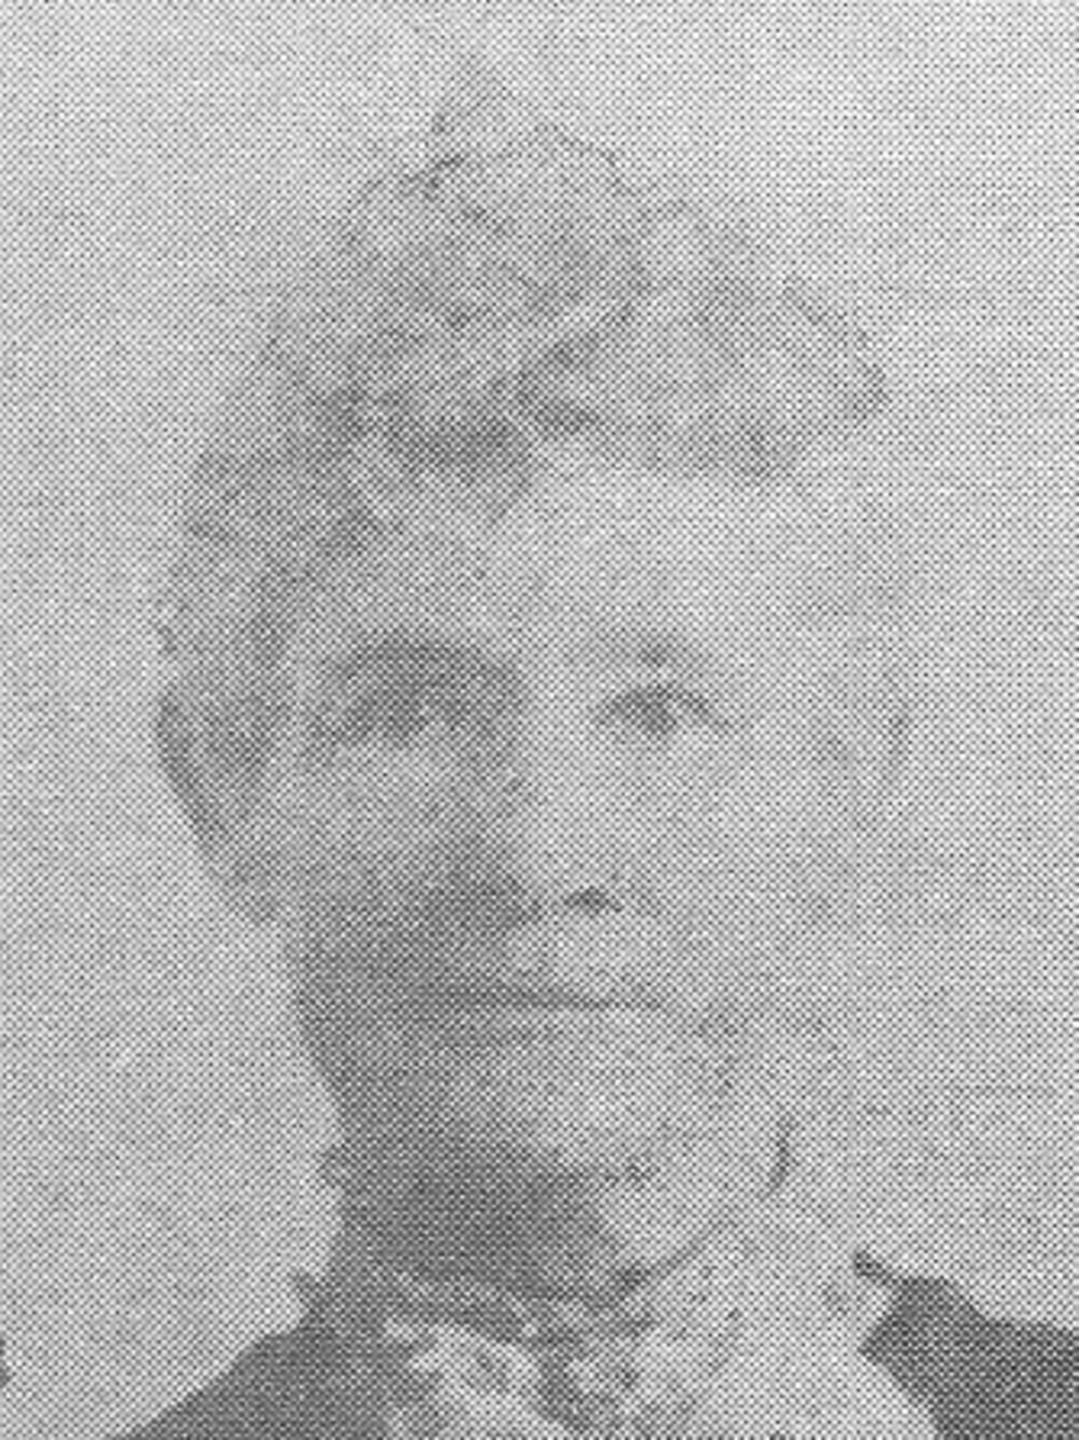 Lydia Ann Webb (1841) Profile